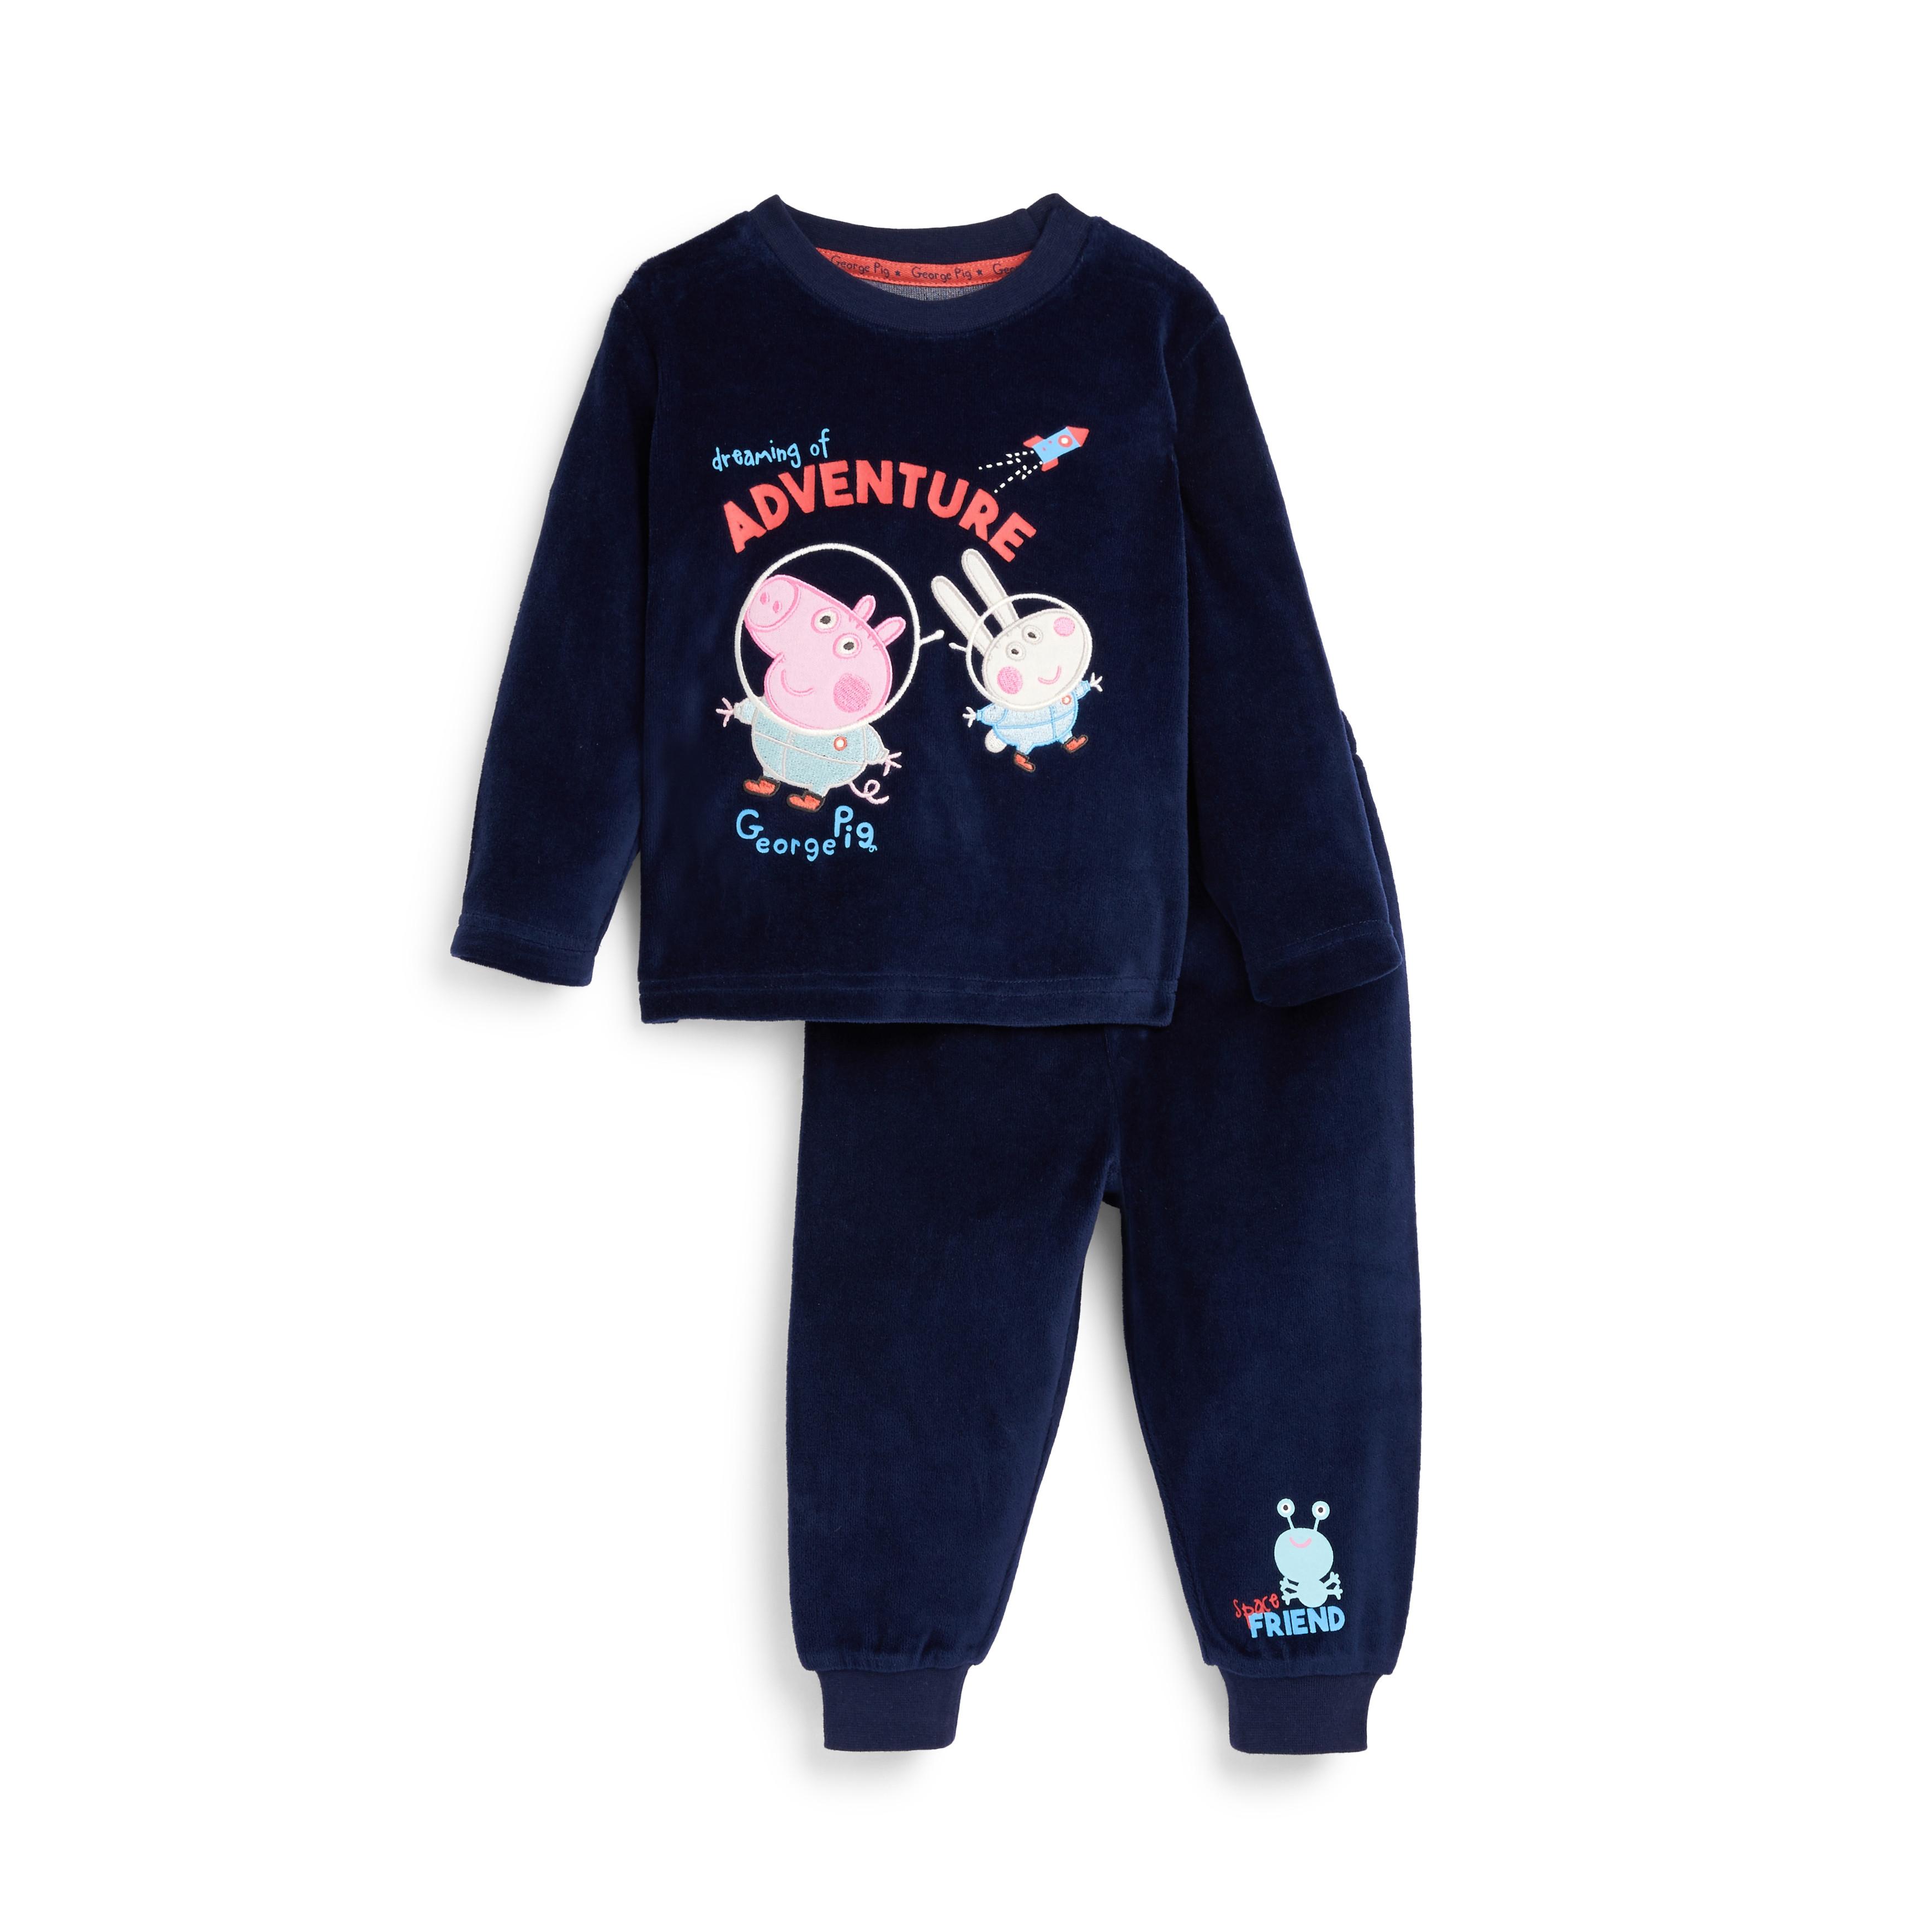 azul marino de velvetón de George de Peppa Pig bebé niño | Básicos de moda para bebé | Moda para bebés y recién nacidos | Ropa para niños | Todos